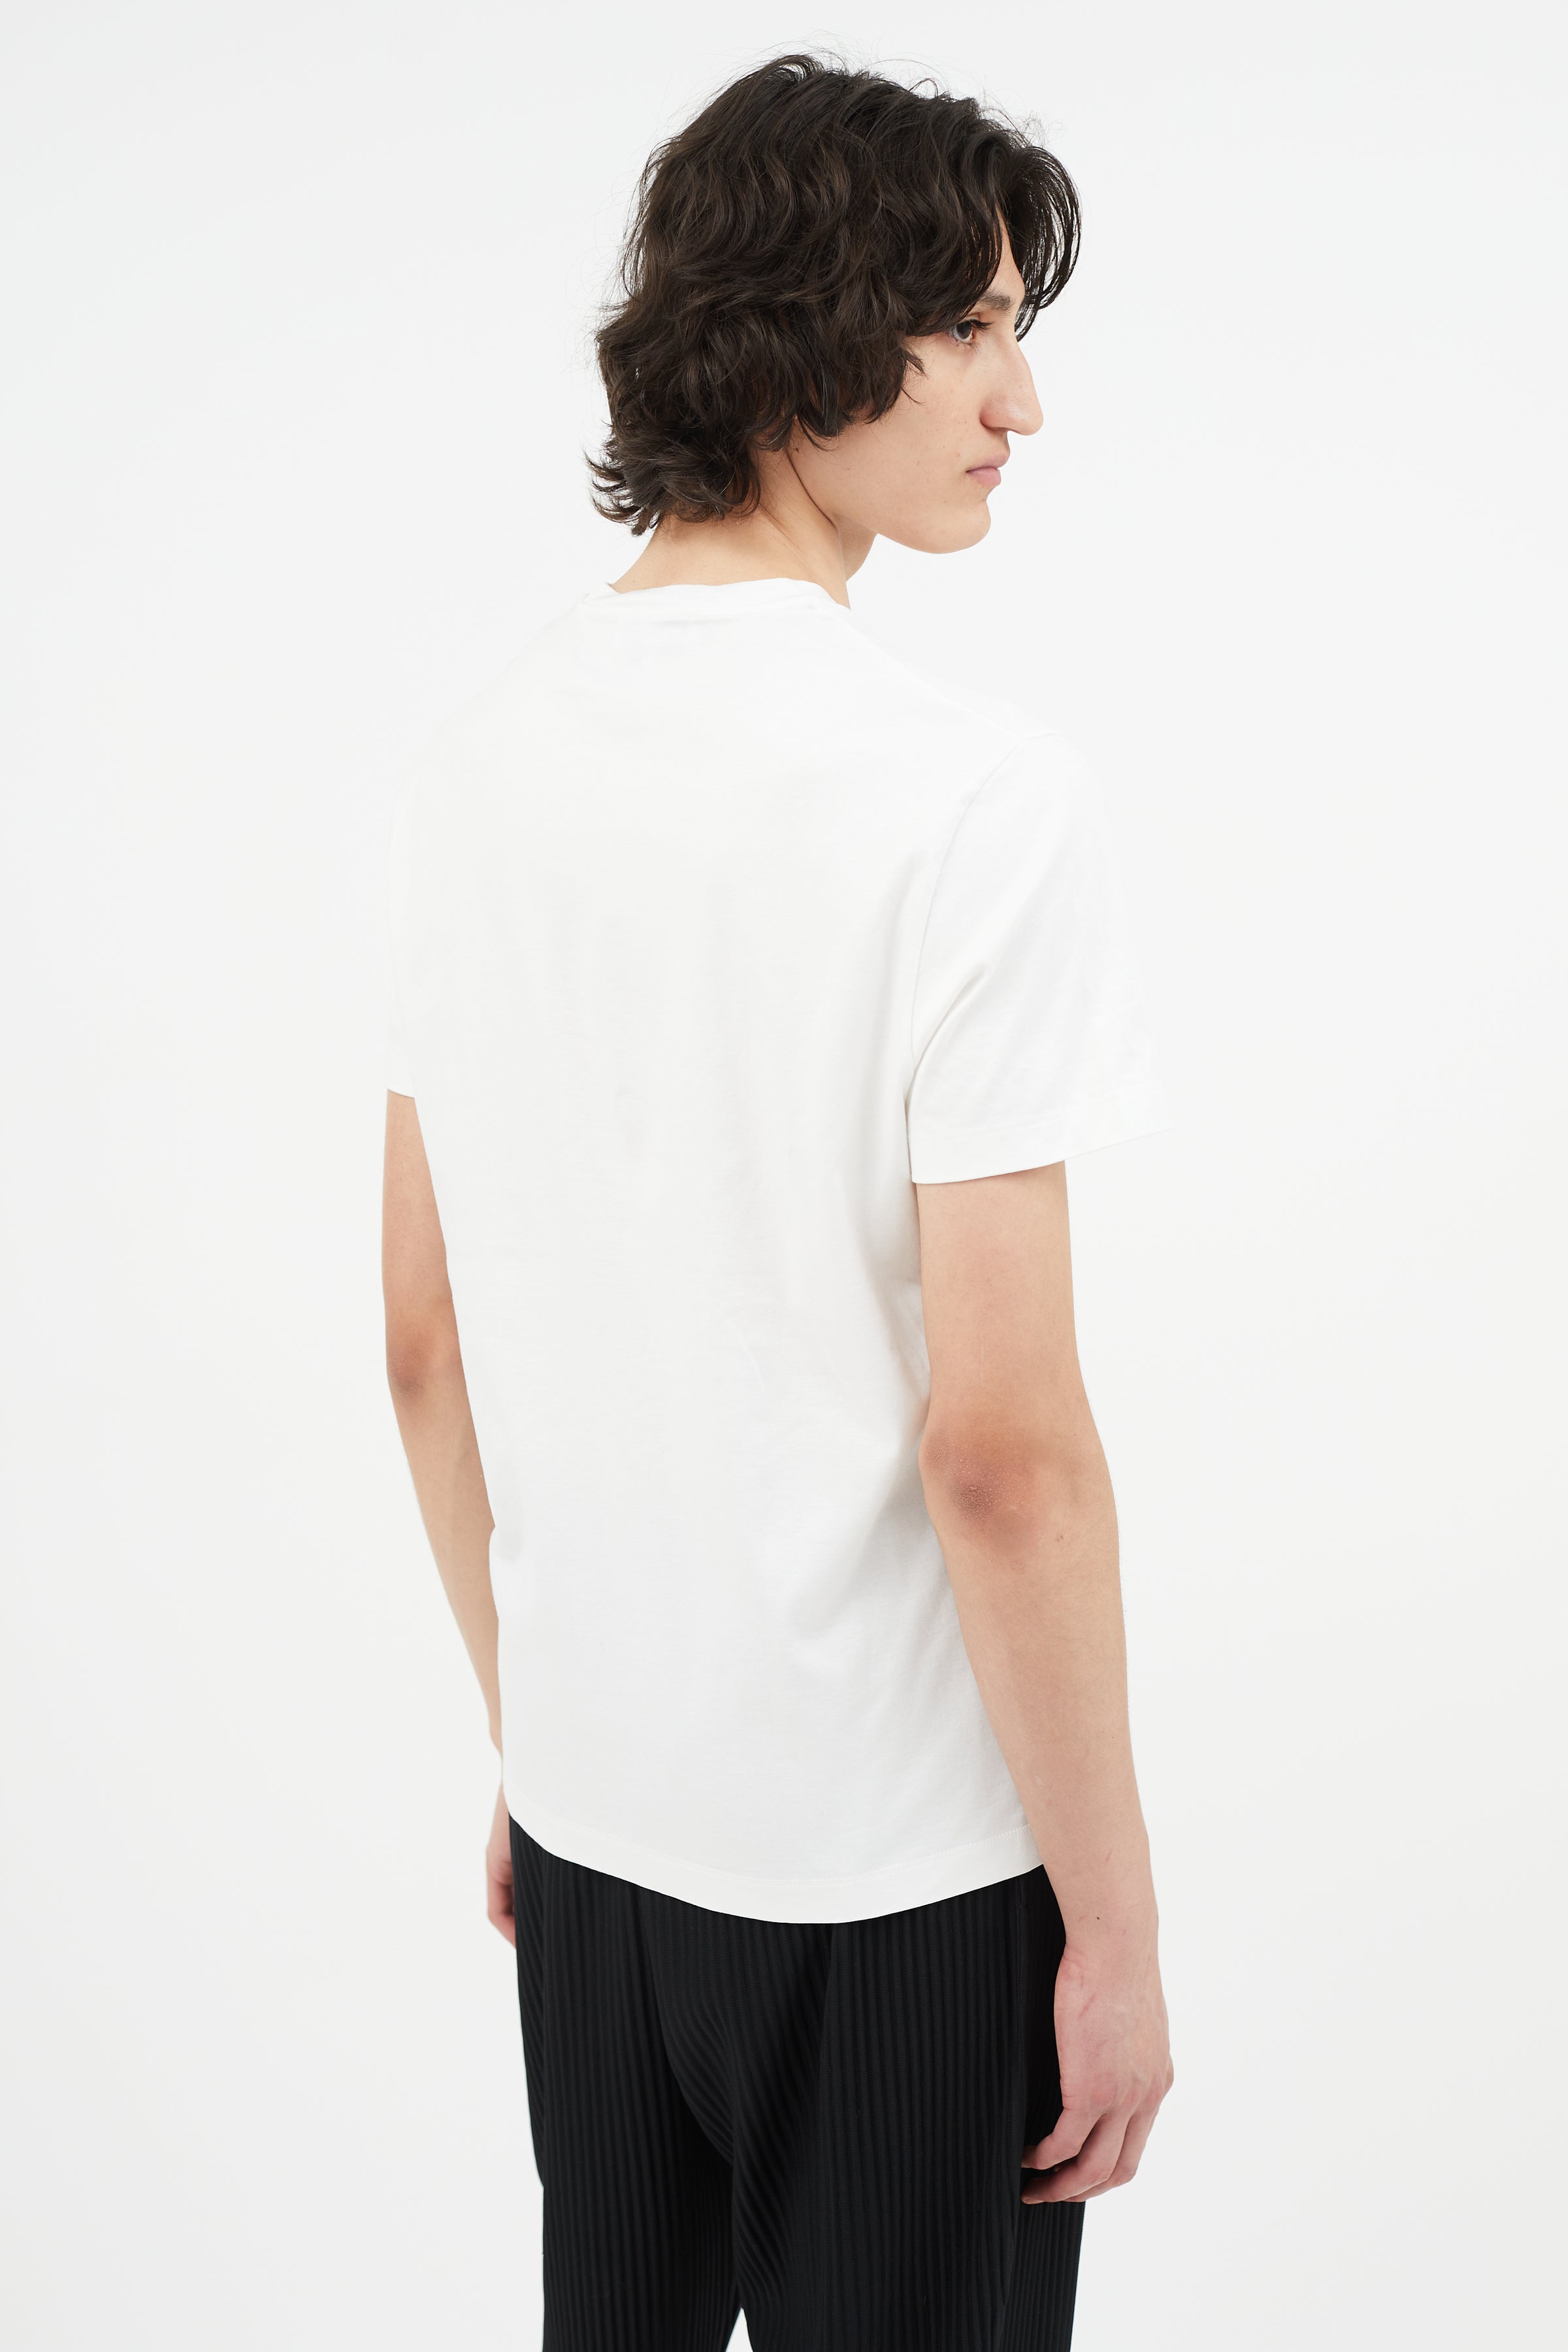 Louis Vuitton - Authenticated T-Shirt - Cotton Multicolour for Men, Never Worn